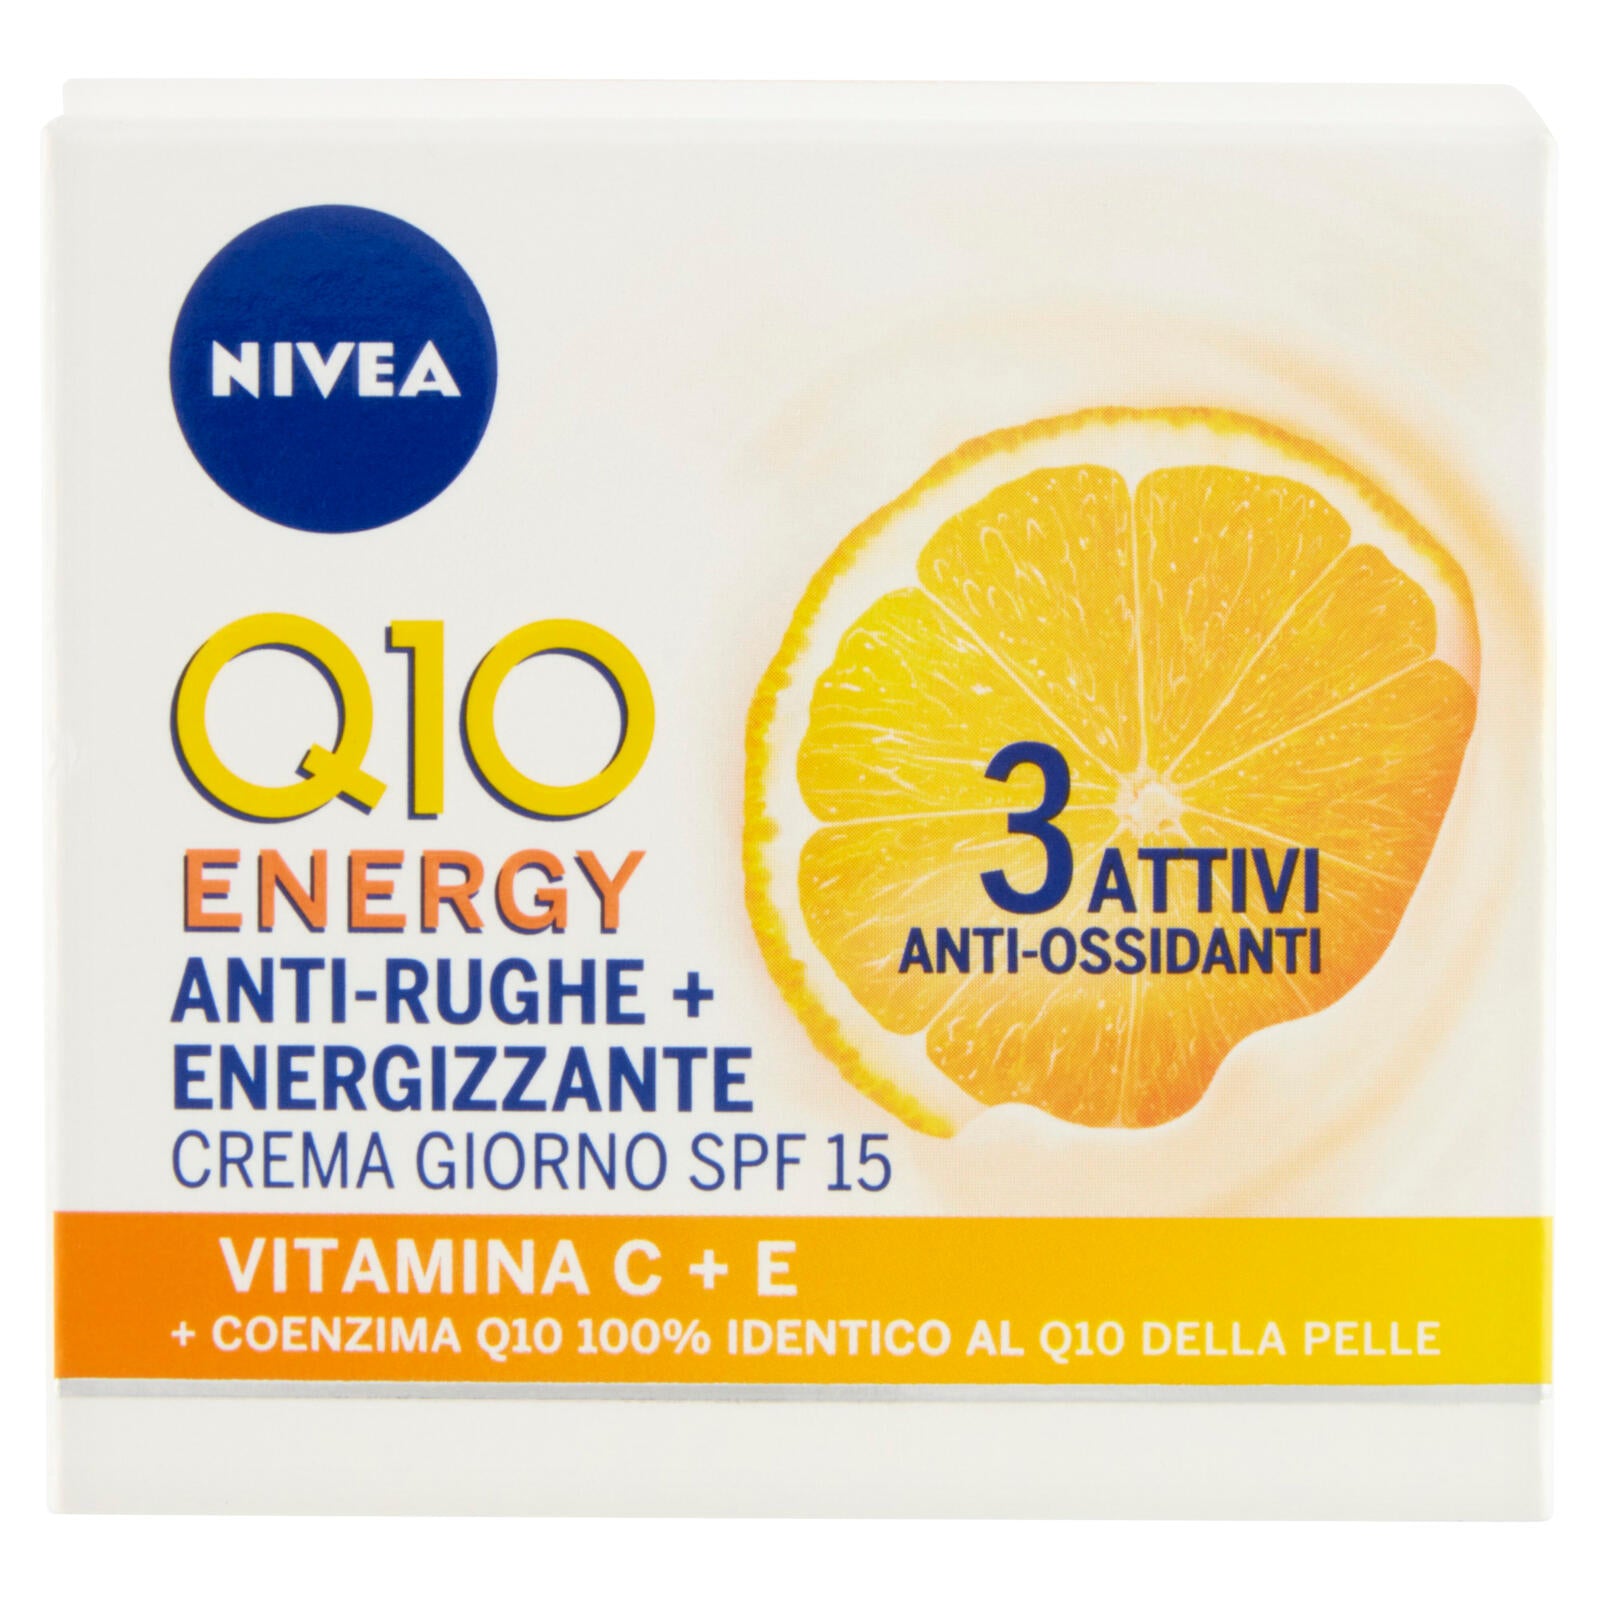 Nivea Q10 Energy Anti-Rughe + Energizzante Crema Giorno SPF 15 50 ml